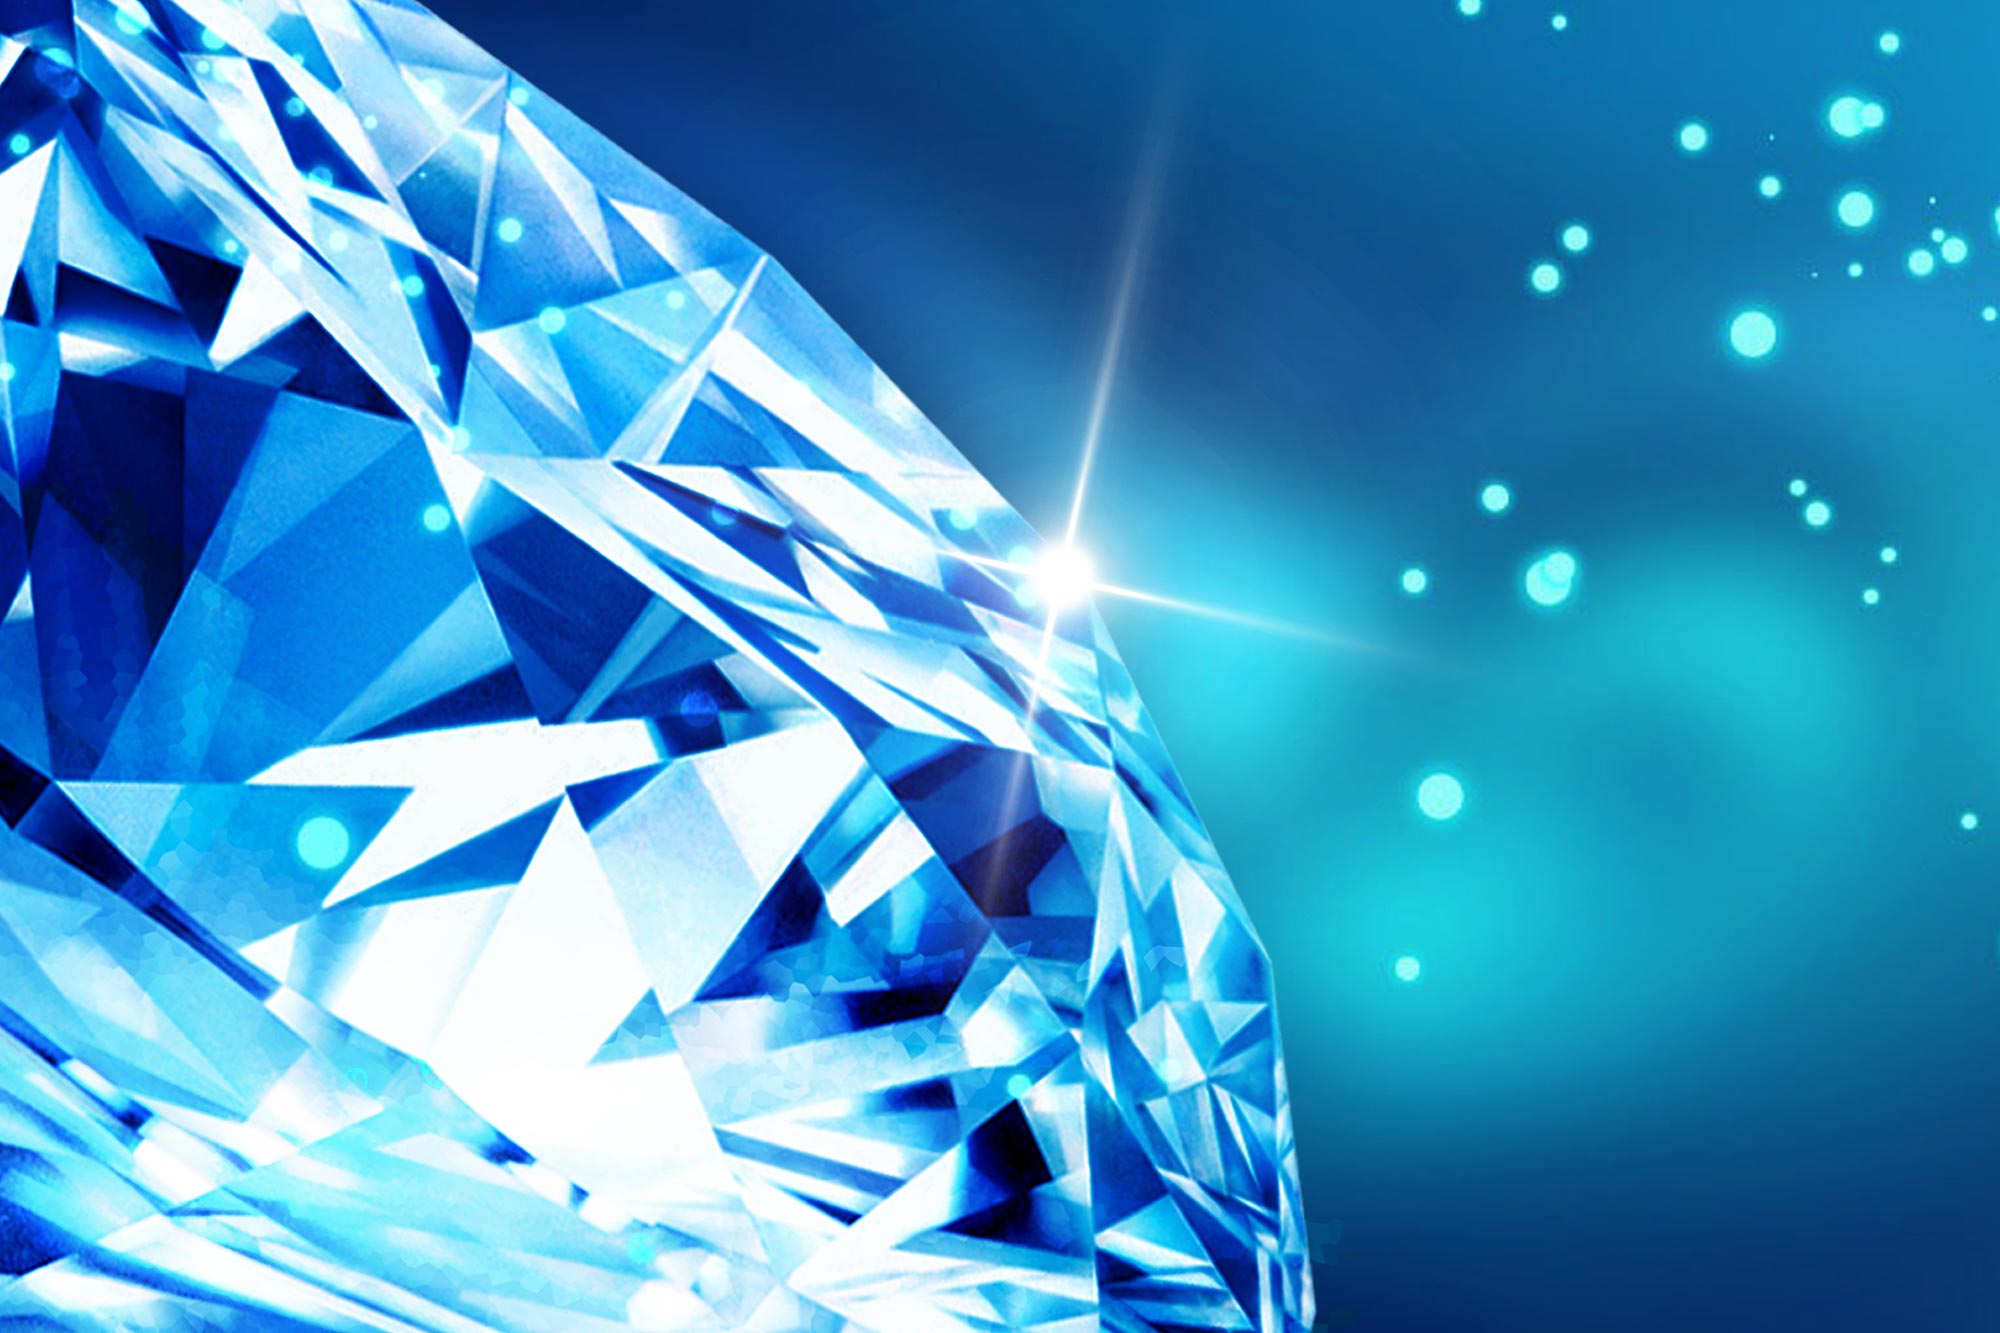 Onderzoekers hebben een “diamantfabriek” diep in de aarde ontdekt